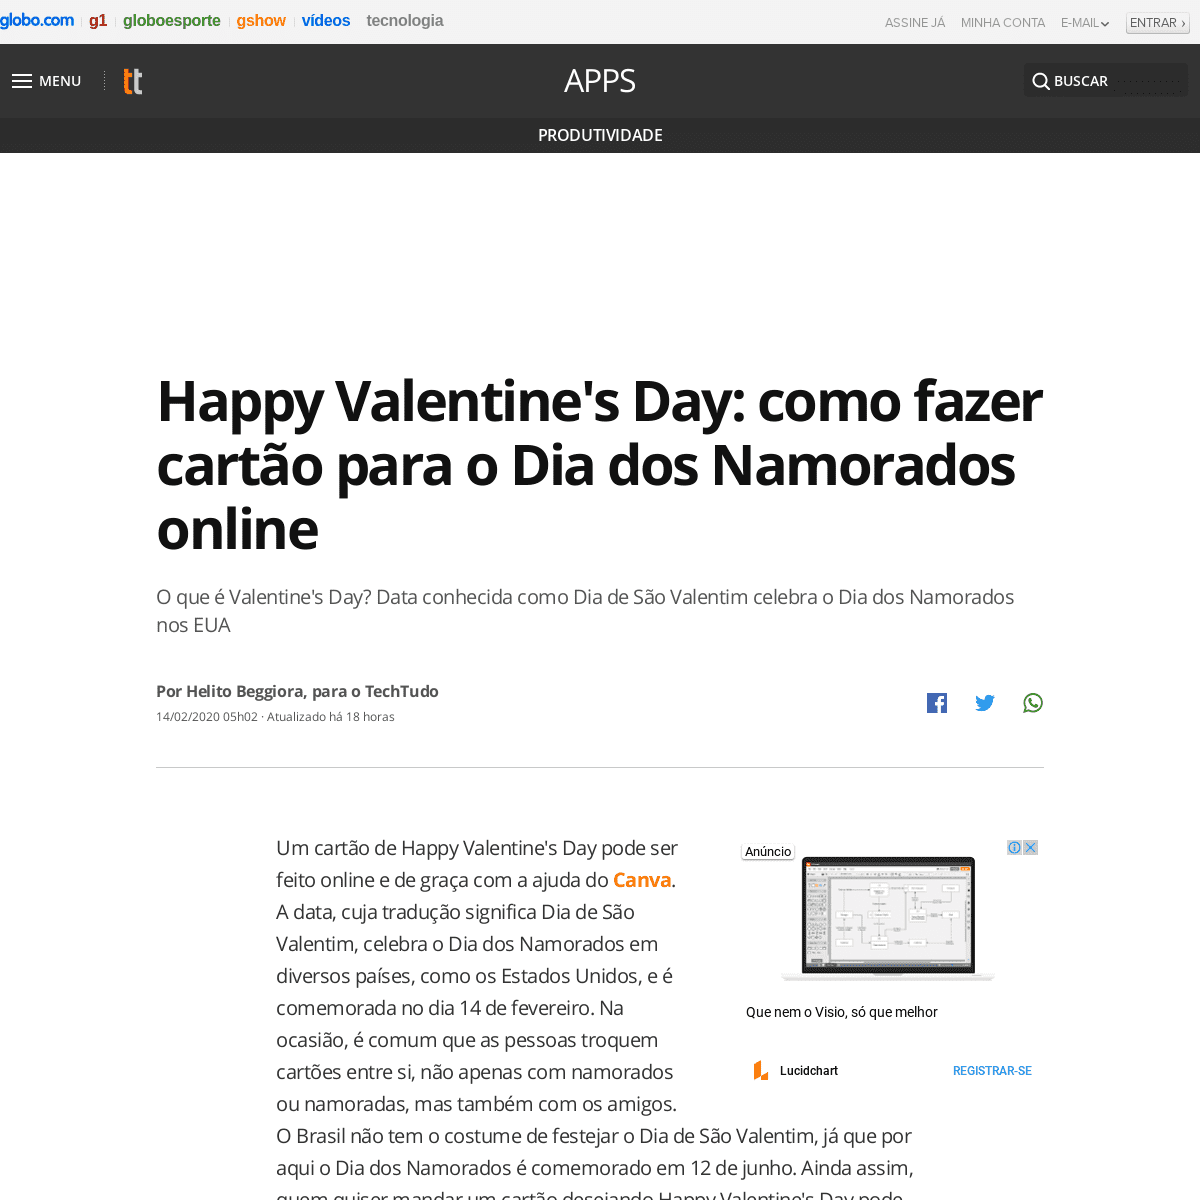 A complete backup of www.techtudo.com.br/dicas-e-tutoriais/2020/02/happy-valentines-day-como-fazer-cartao-para-o-dia-dos-namorad